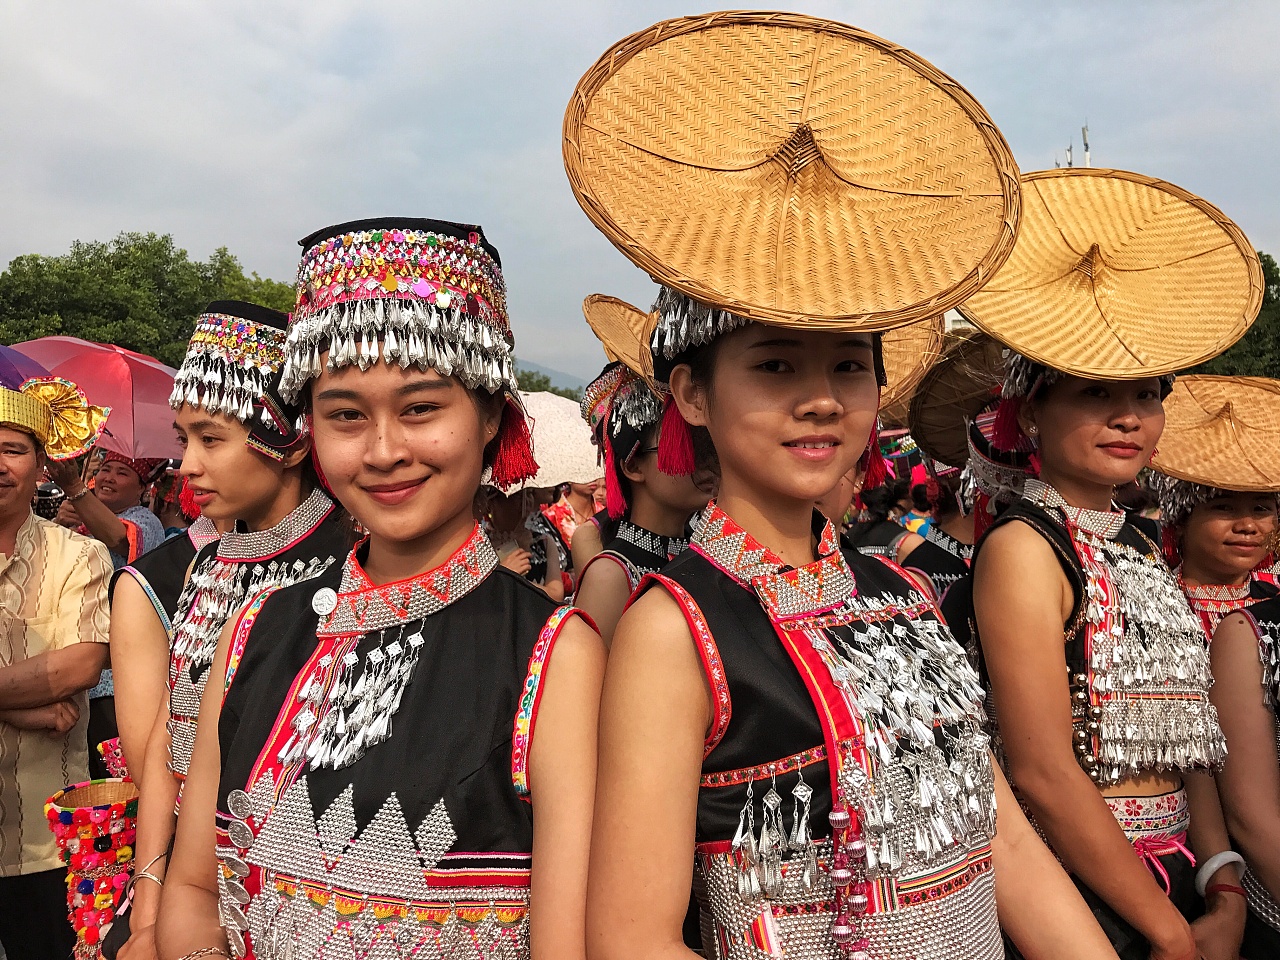 傣族五月花街节,傣族都要参加节日表演,傣族的头饰和帽子具有特色的